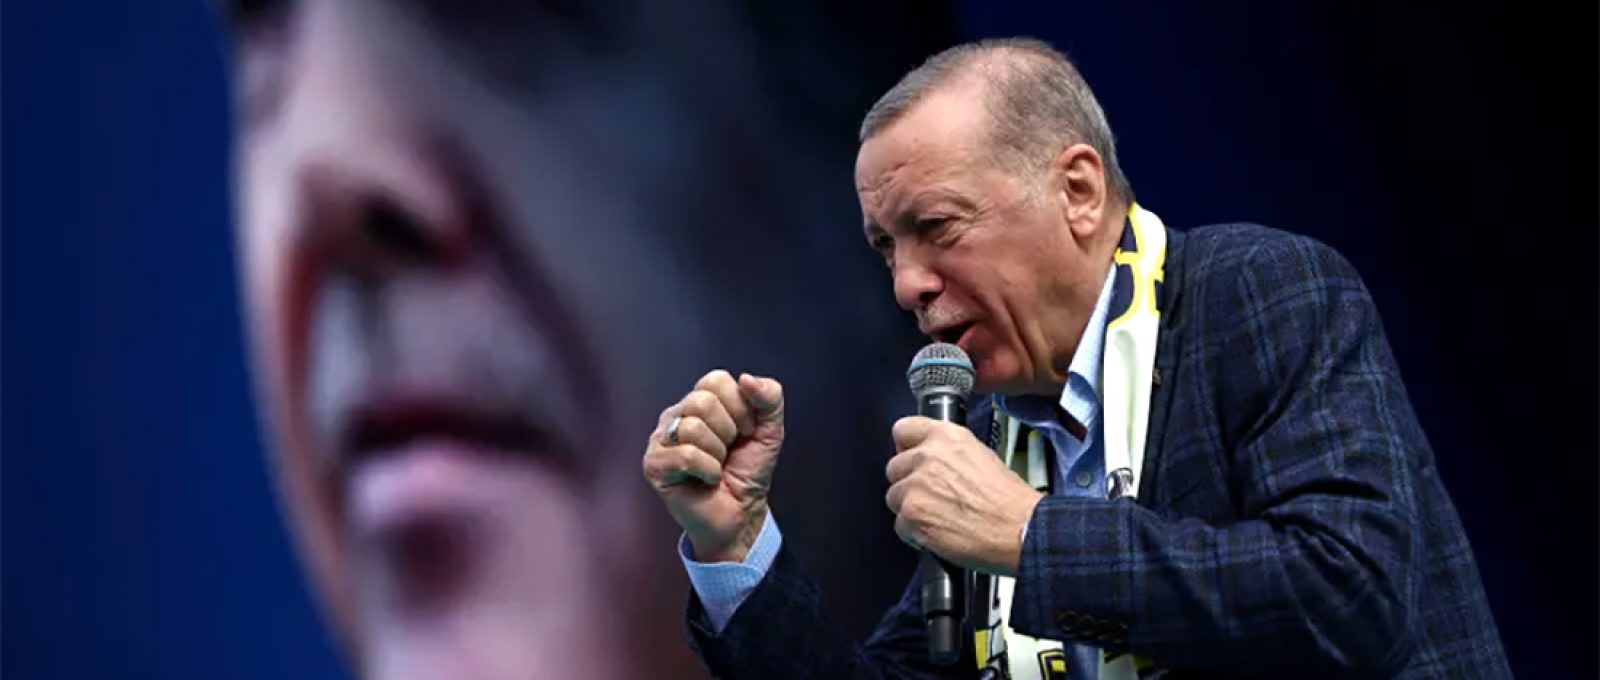 O presidente turco Recep Tayyip Erdogan discursa para apoiadores em Ancara, Turquia, abril de 2023 (Cagla Gurdogan/Reuters).